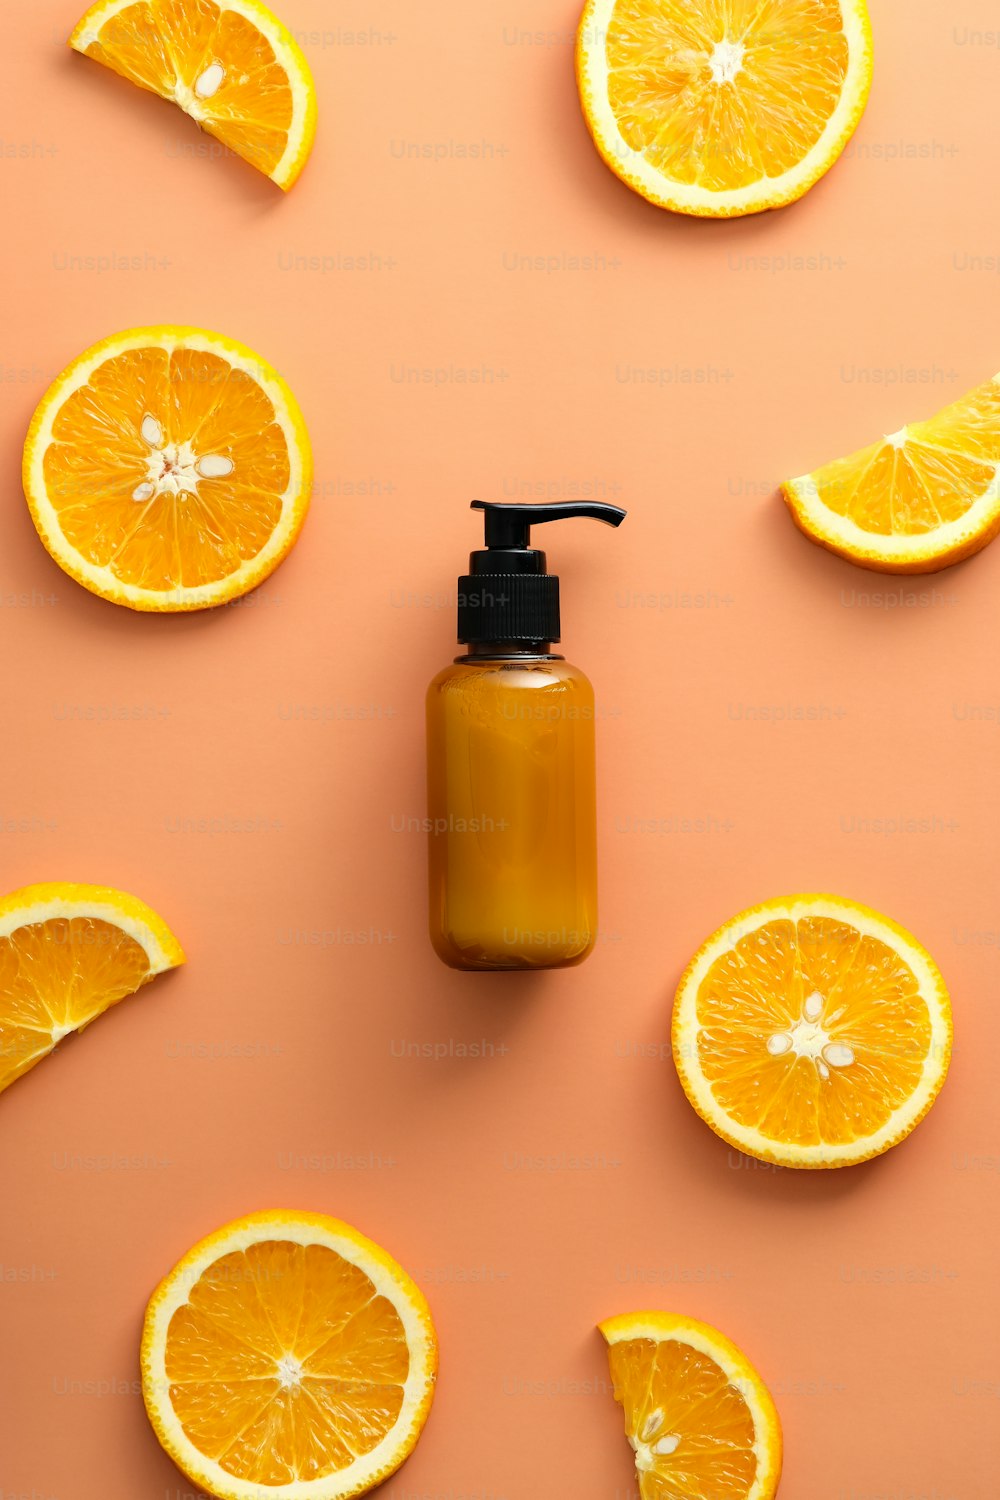 Bình lotion mỹ phẩm Vitamin C và miếng cam trên nền màu tươi sáng là sự kết hợp hoàn hảo giữa tinh túy của thiên nhiên và công nghệ chăm sóc da tiên tiến. Hãy để màu cam trở thành nguồn cảm hứng để bạn chăm sóc da và tôn vinh vẻ đẹp tự nhiên của mình!